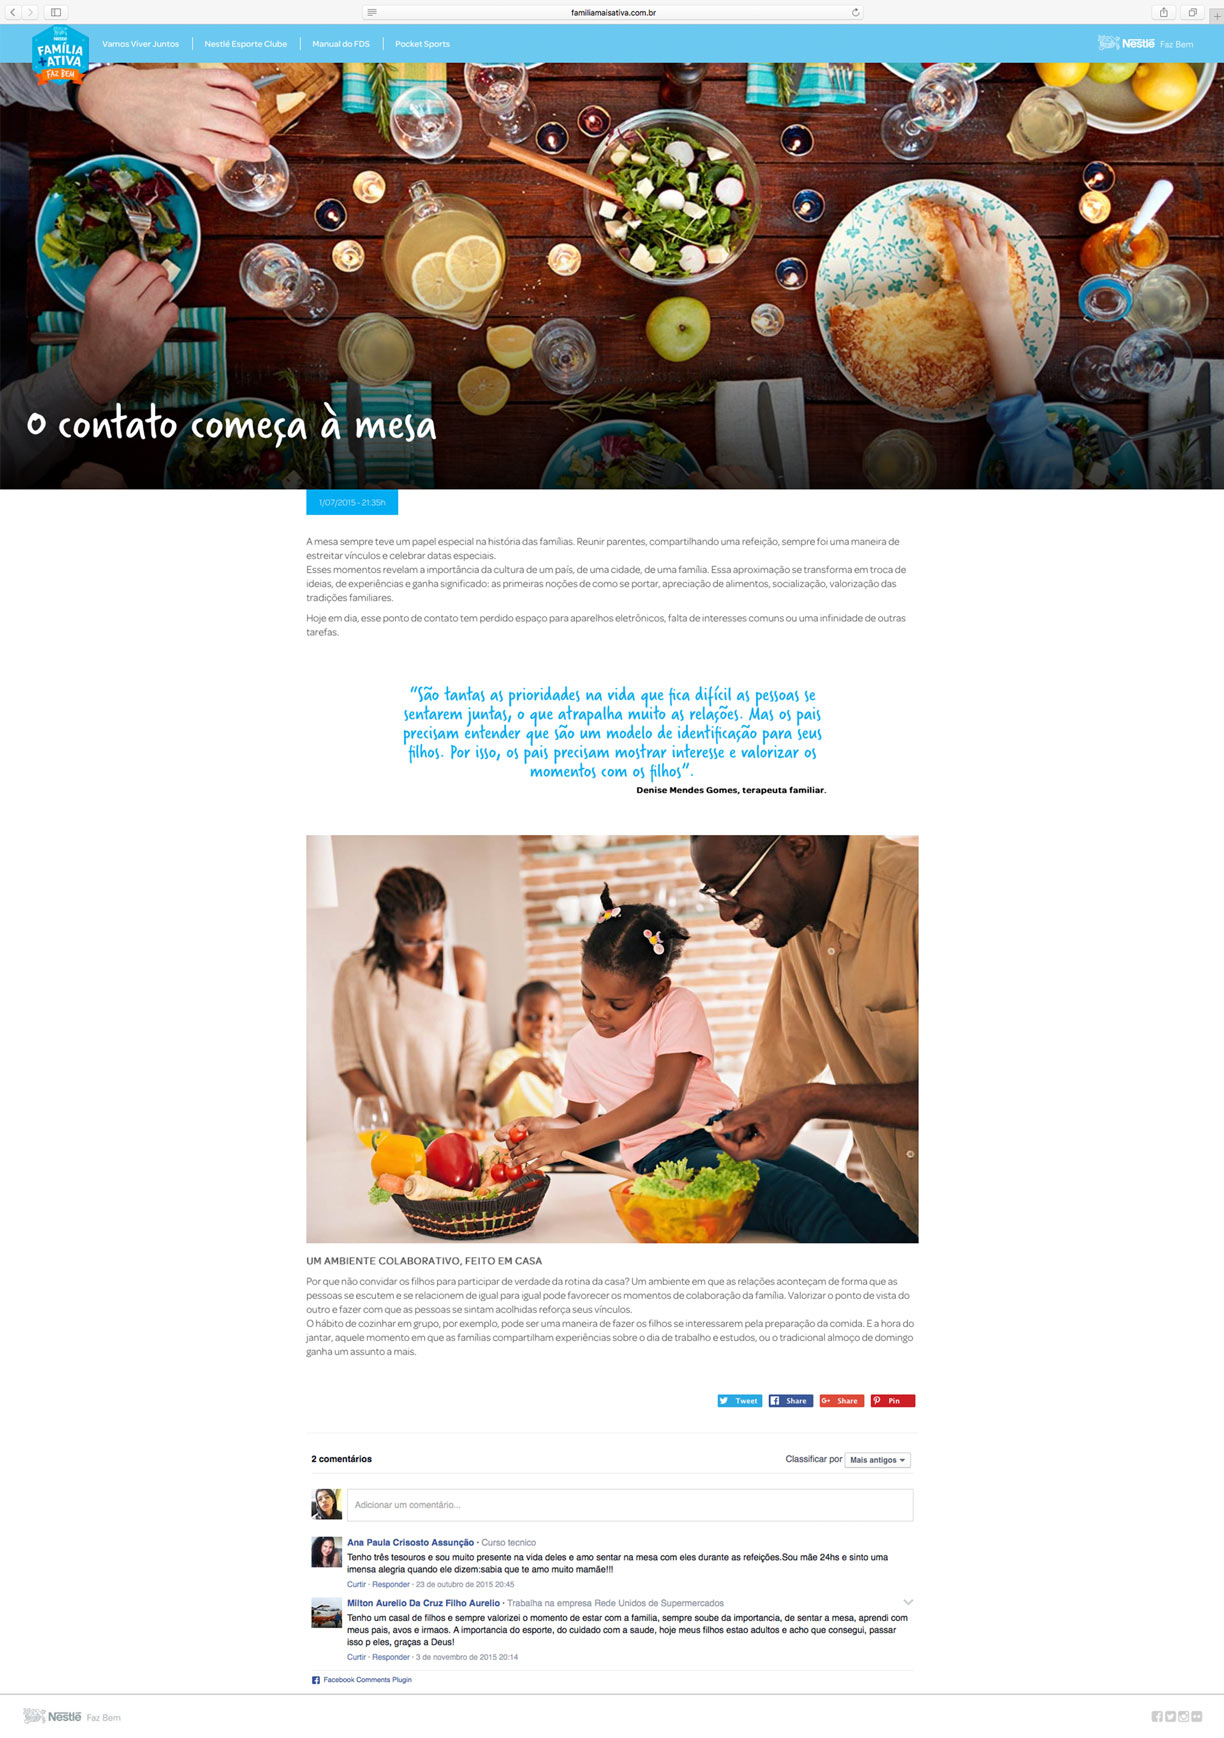 Família + Ativa - Nestlé | New Content